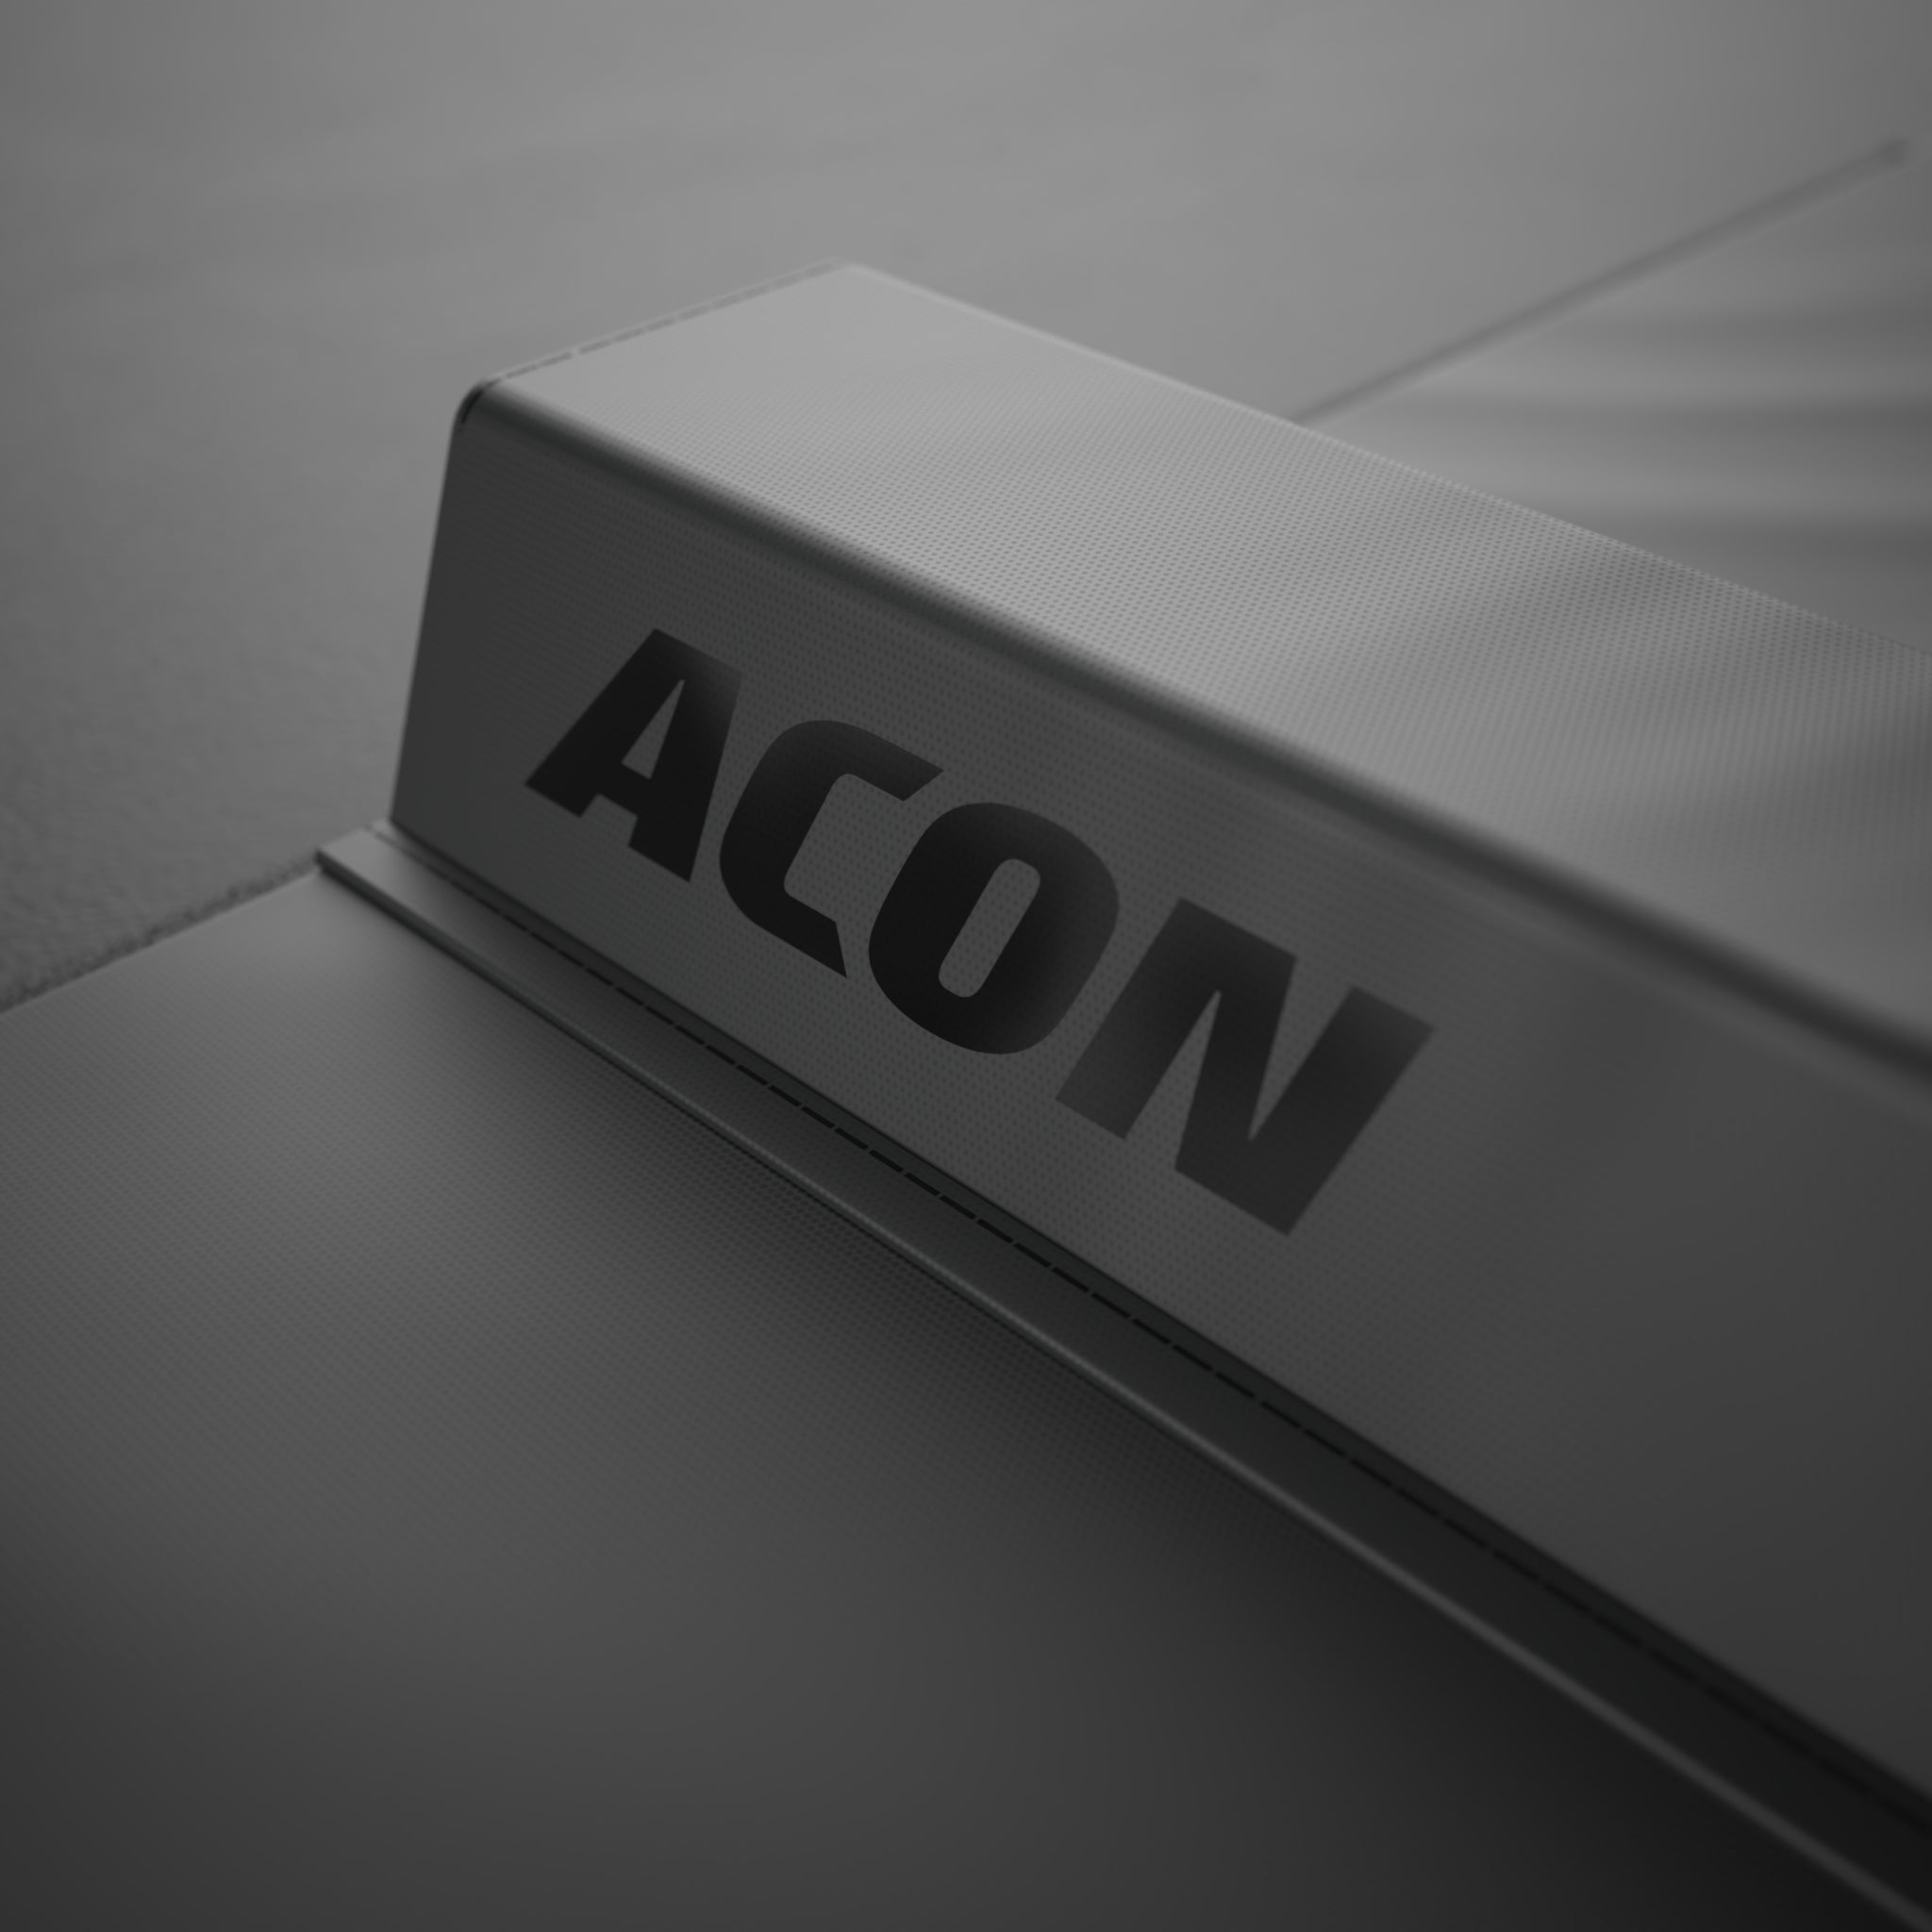 Närbild av Black Acon-logotypen på Black Edition ACON Balance Beam